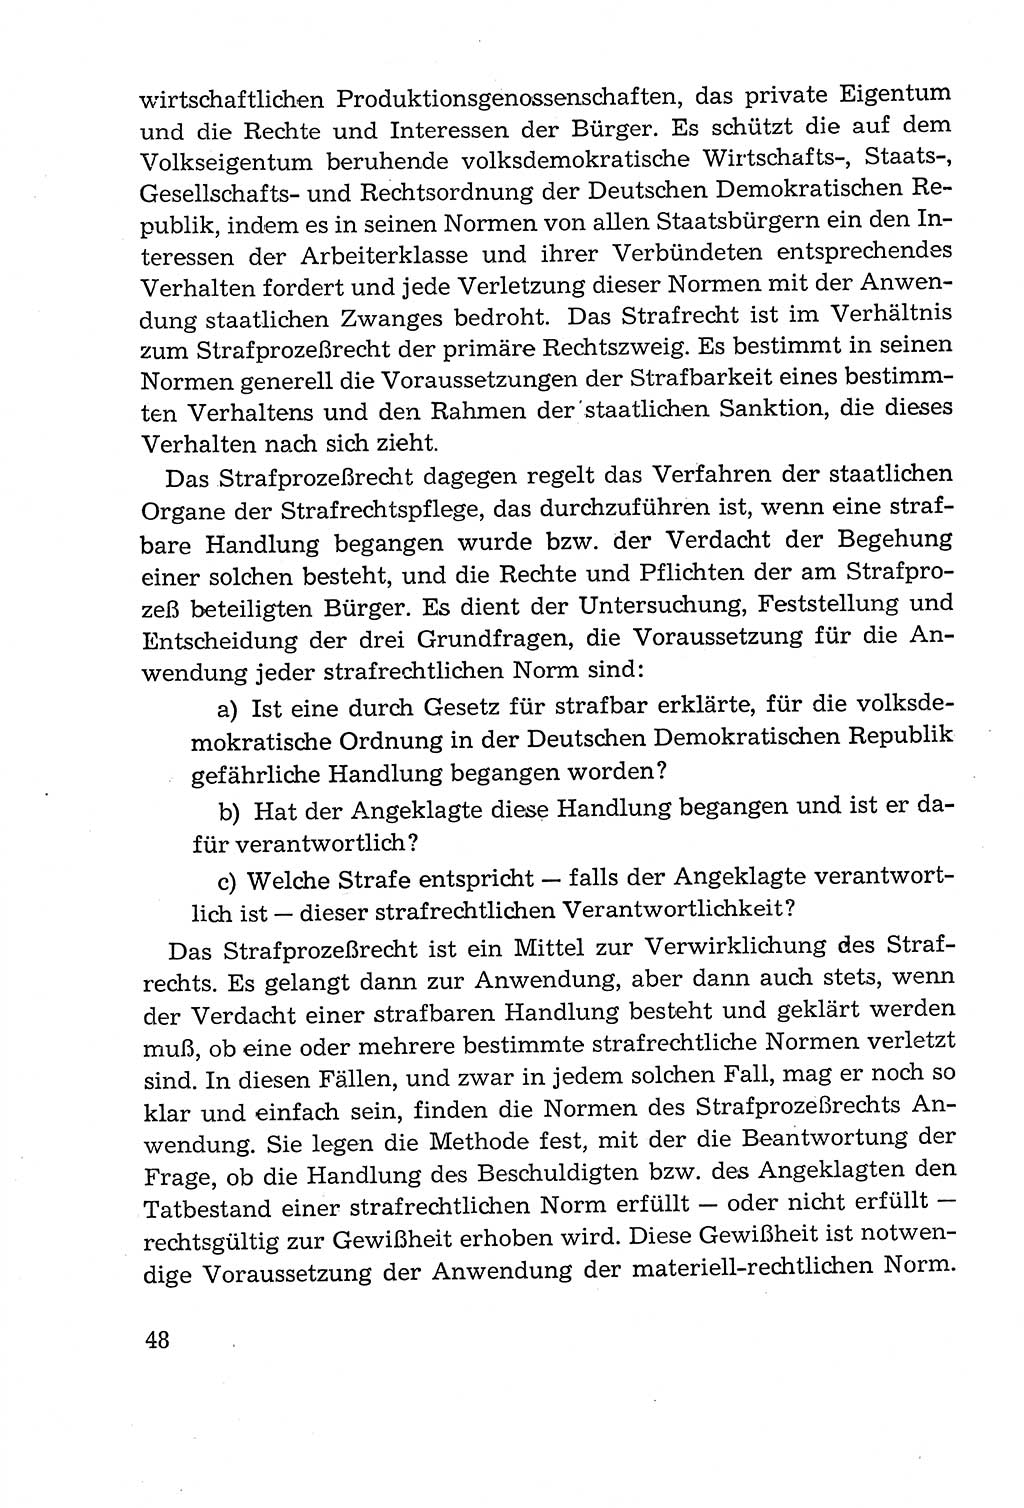 Leitfaden des Strafprozeßrechts der Deutschen Demokratischen Republik (DDR) 1959, Seite 48 (LF StPR DDR 1959, S. 48)